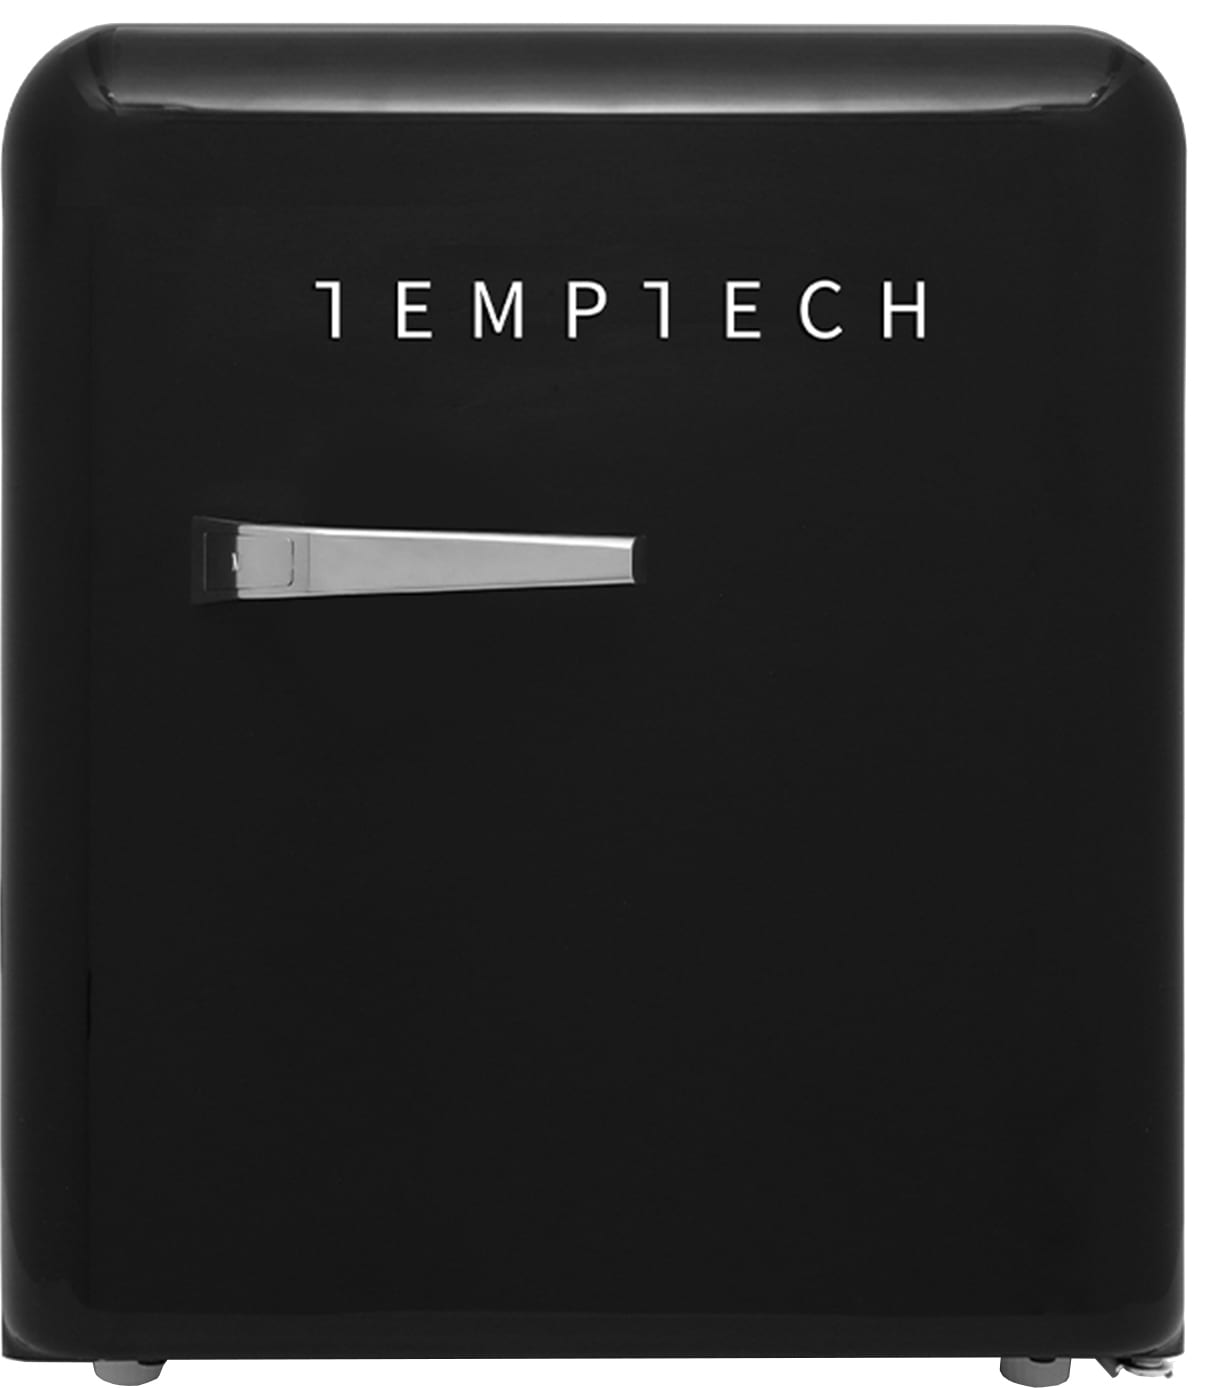 Temptech minikøleskab VINT450BLACK